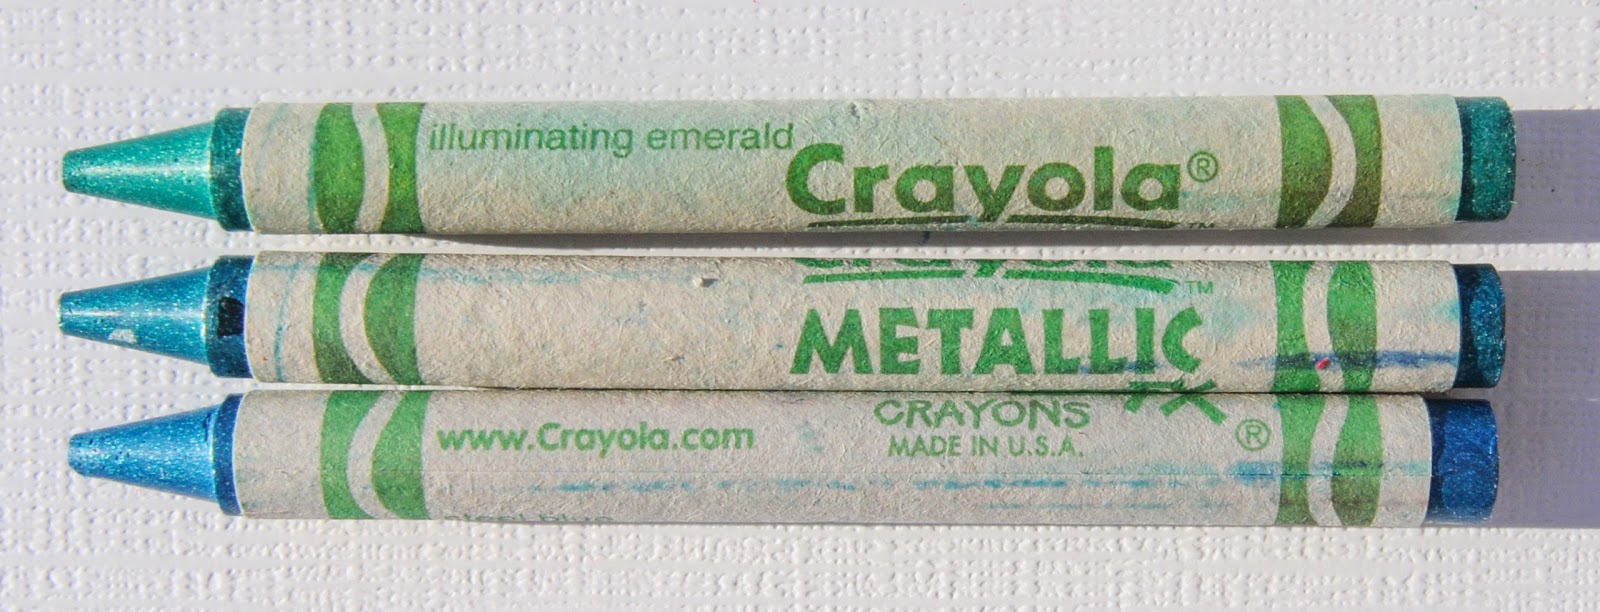 Crayola Metallic Crayons Review 